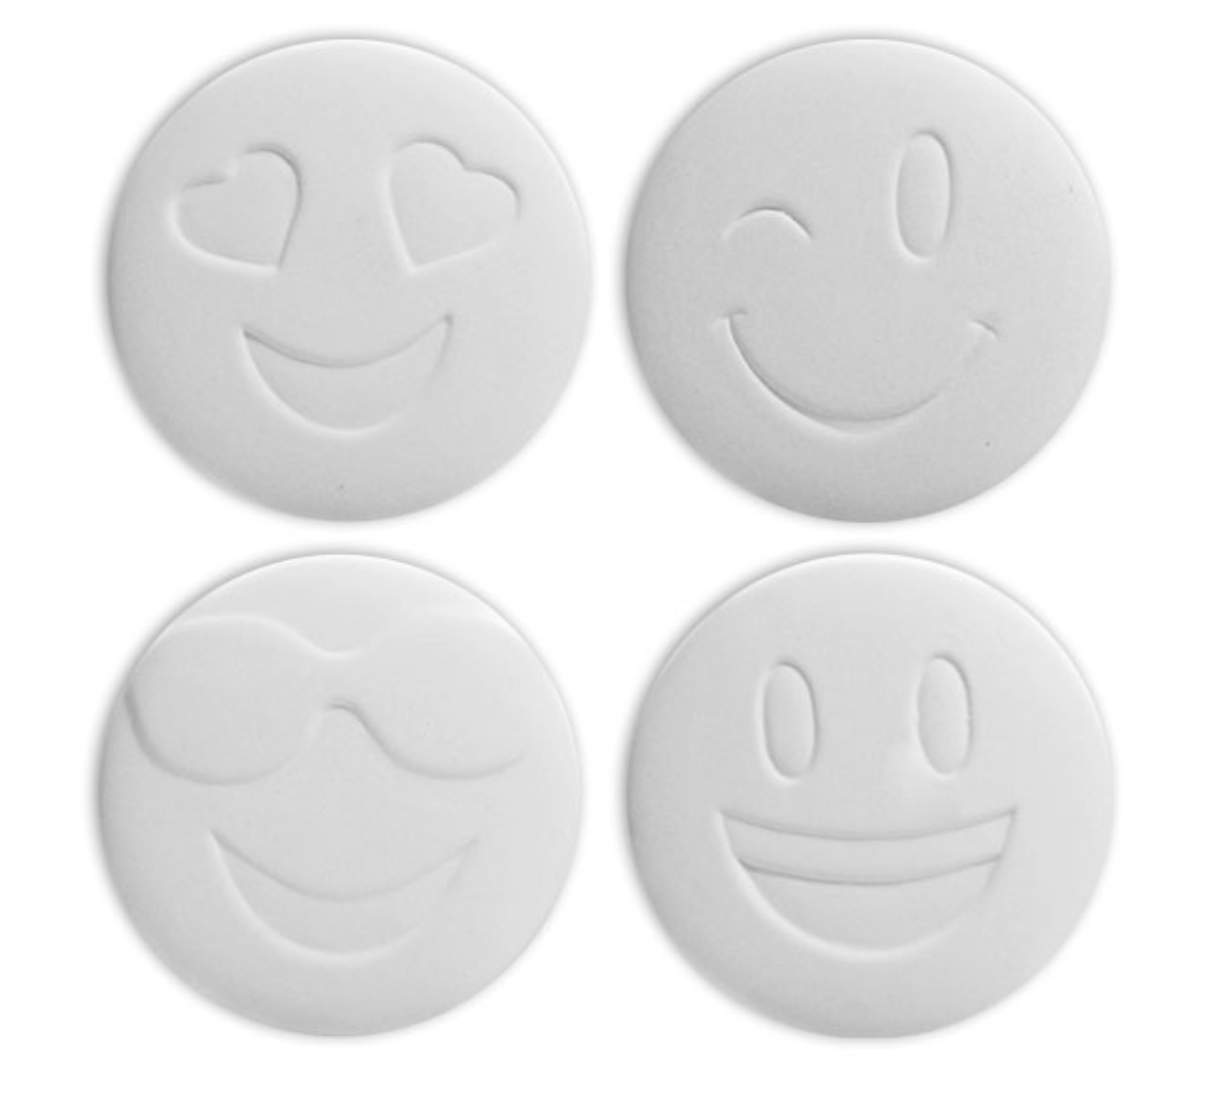 Ceramic Emoji Coaster Tile